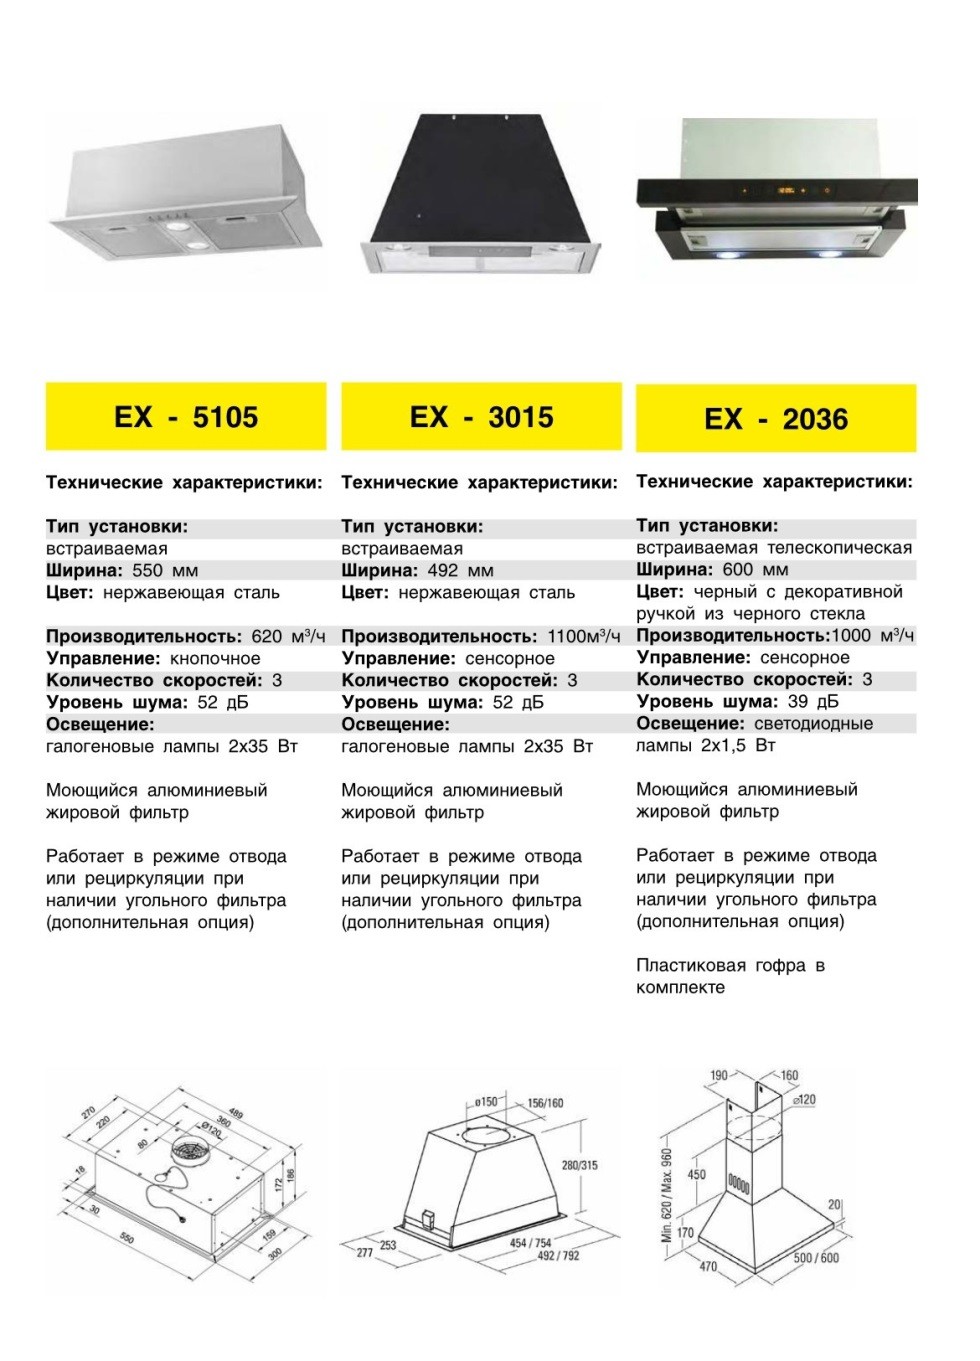 Кухонная вытяжка EXITEQ EX 3015 в Беларуси недорого. Каталог и цены